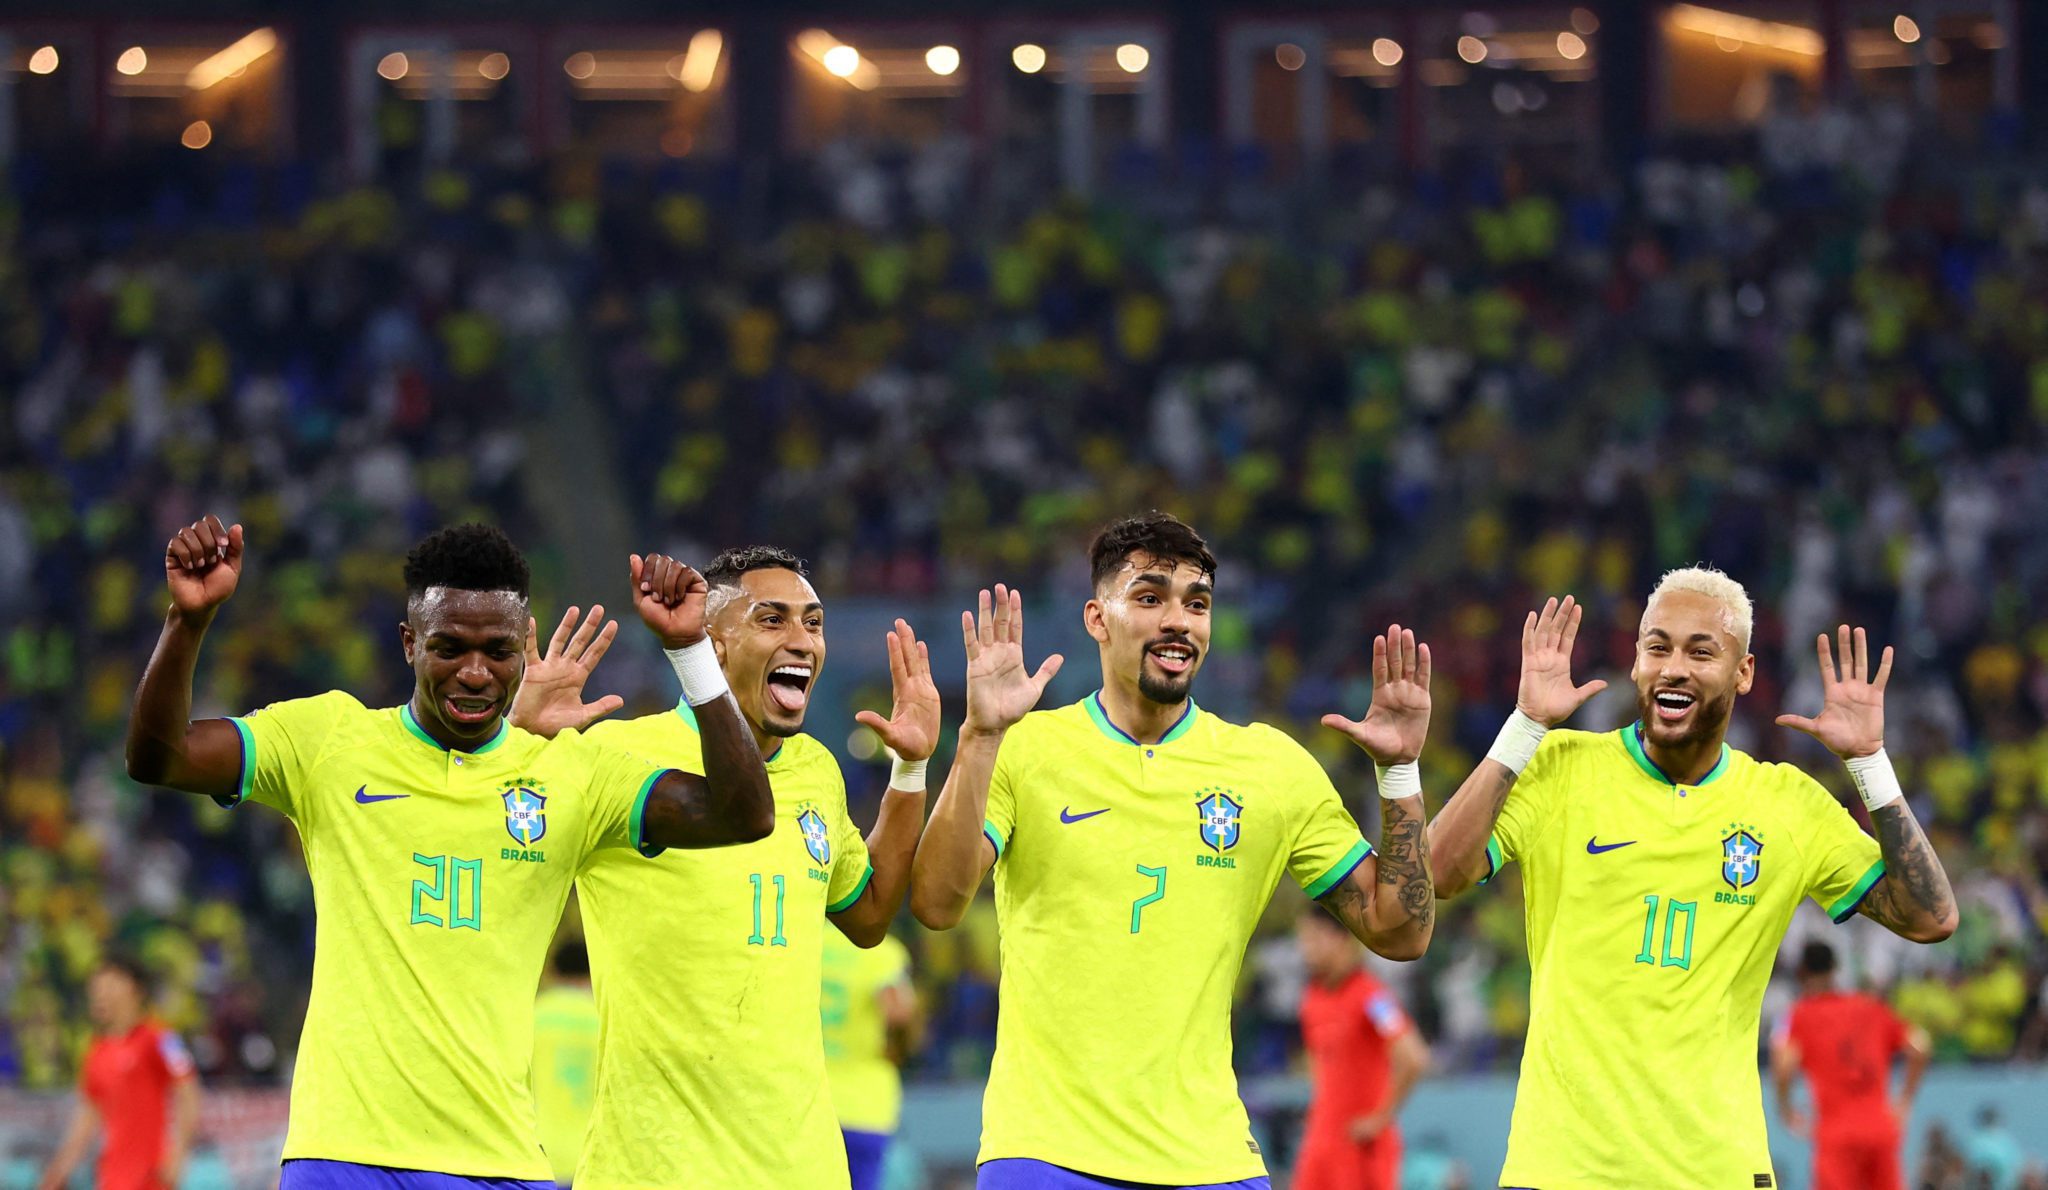 Brasil vence Coreia do Sul por 4 a 1 e avança para as quartas de final da  Copa do Mundo